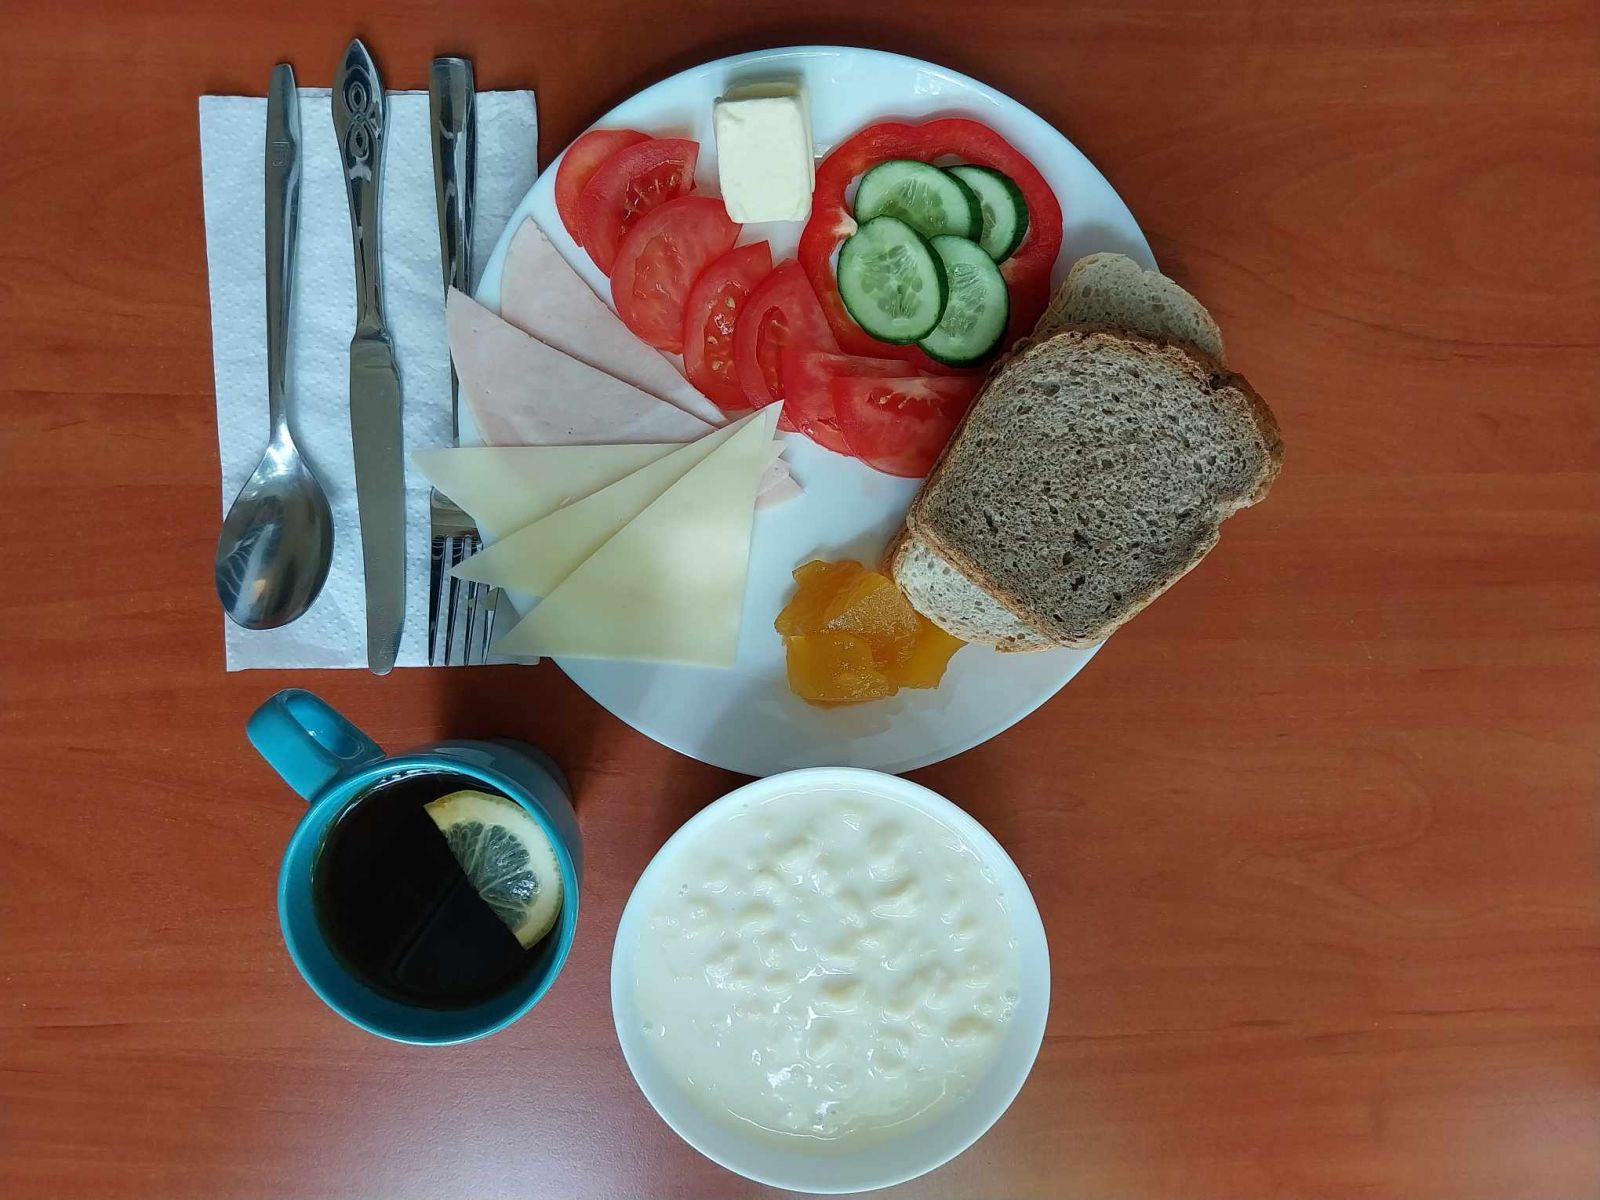 zupa mleczna, dżem, kanapki z serem, wędliną i warzywami, herbata z cytryną